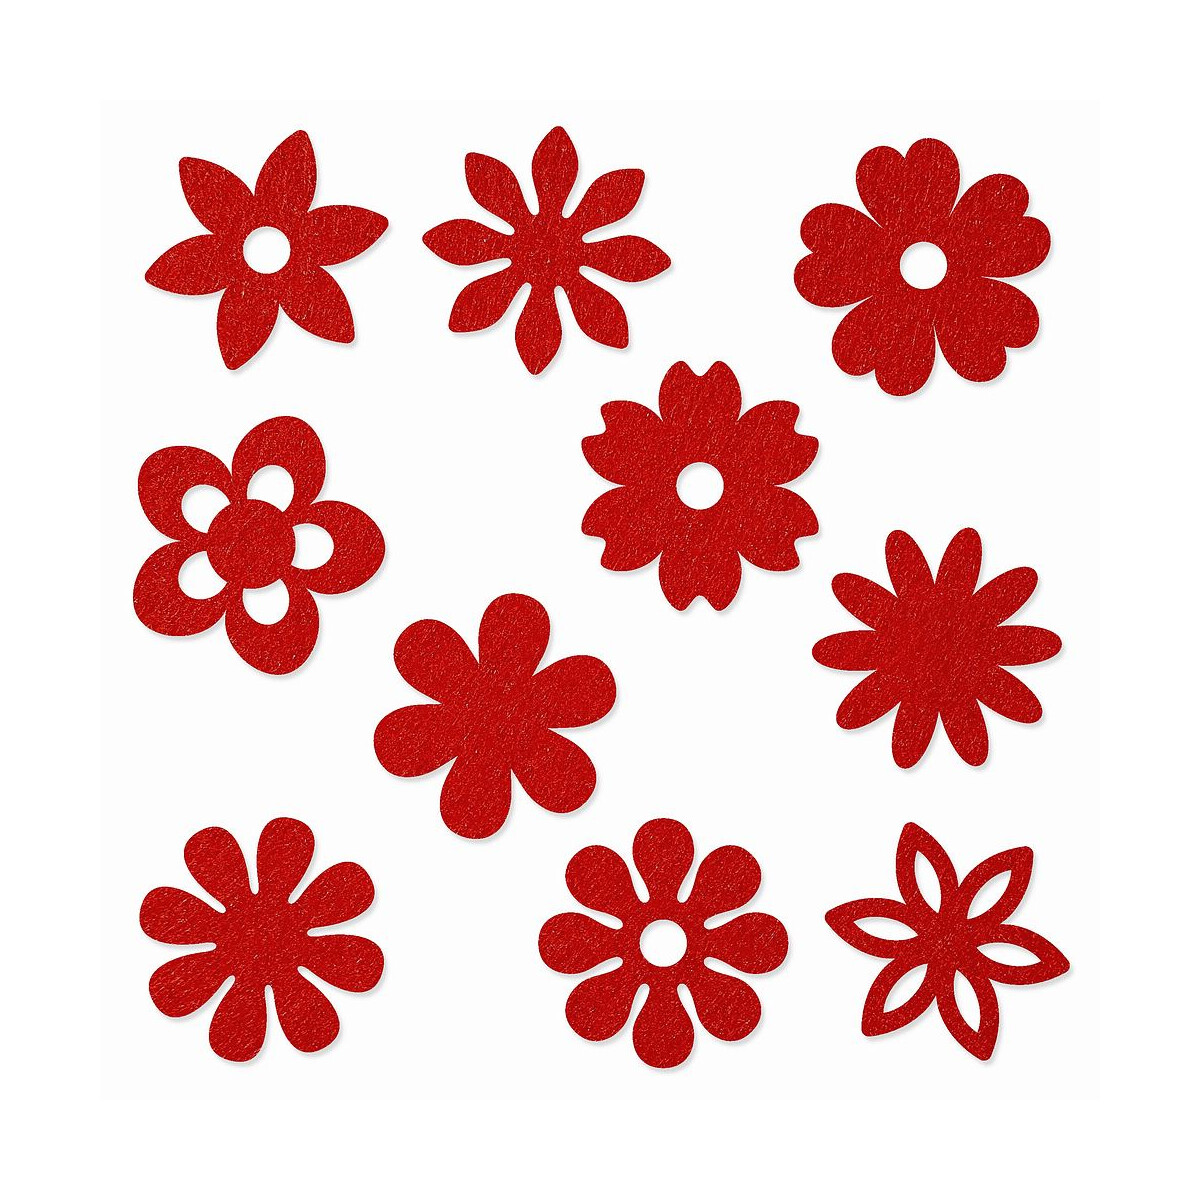 FILZ Blumen 10er Set in 10 Formen 8 cm - mohnrot